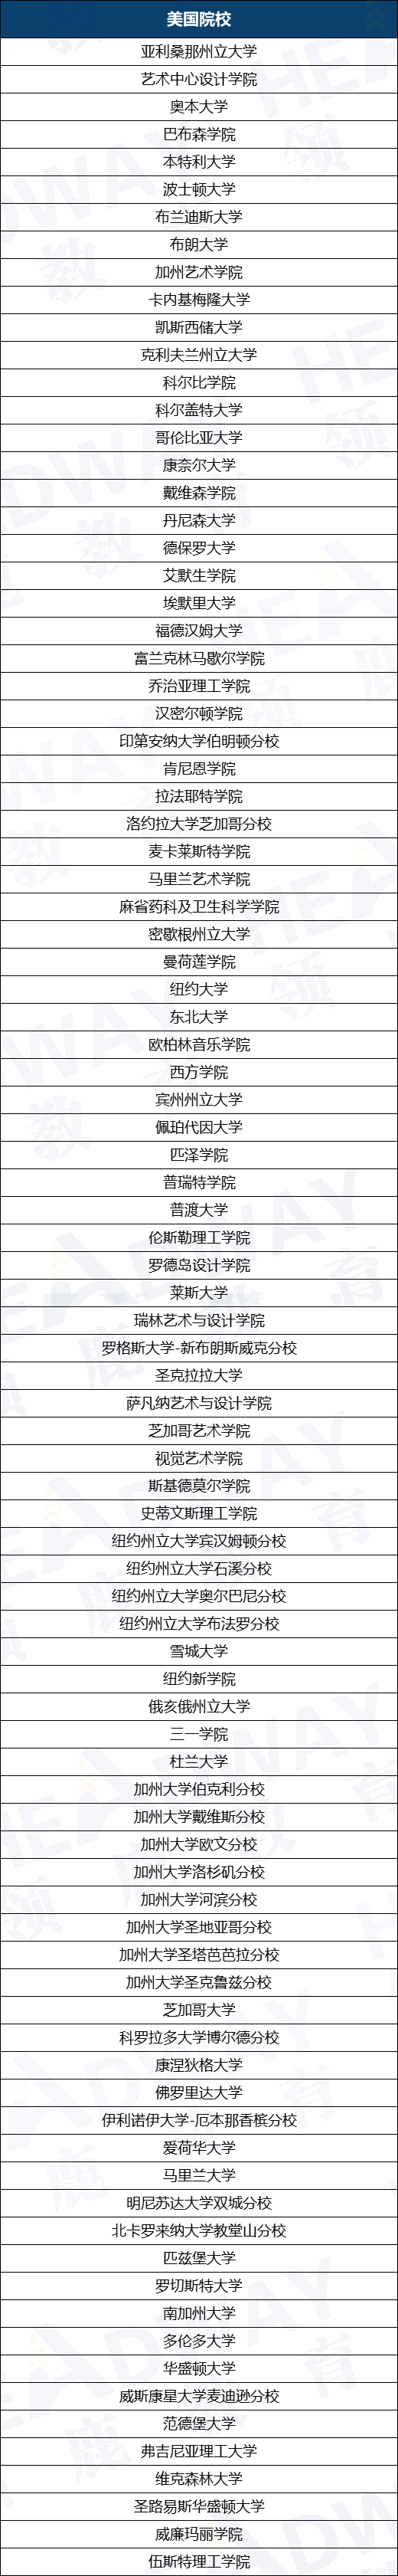 上海这6所开设AP课程的国际学校2023届升学哪家强？?看完这篇你就懂了~